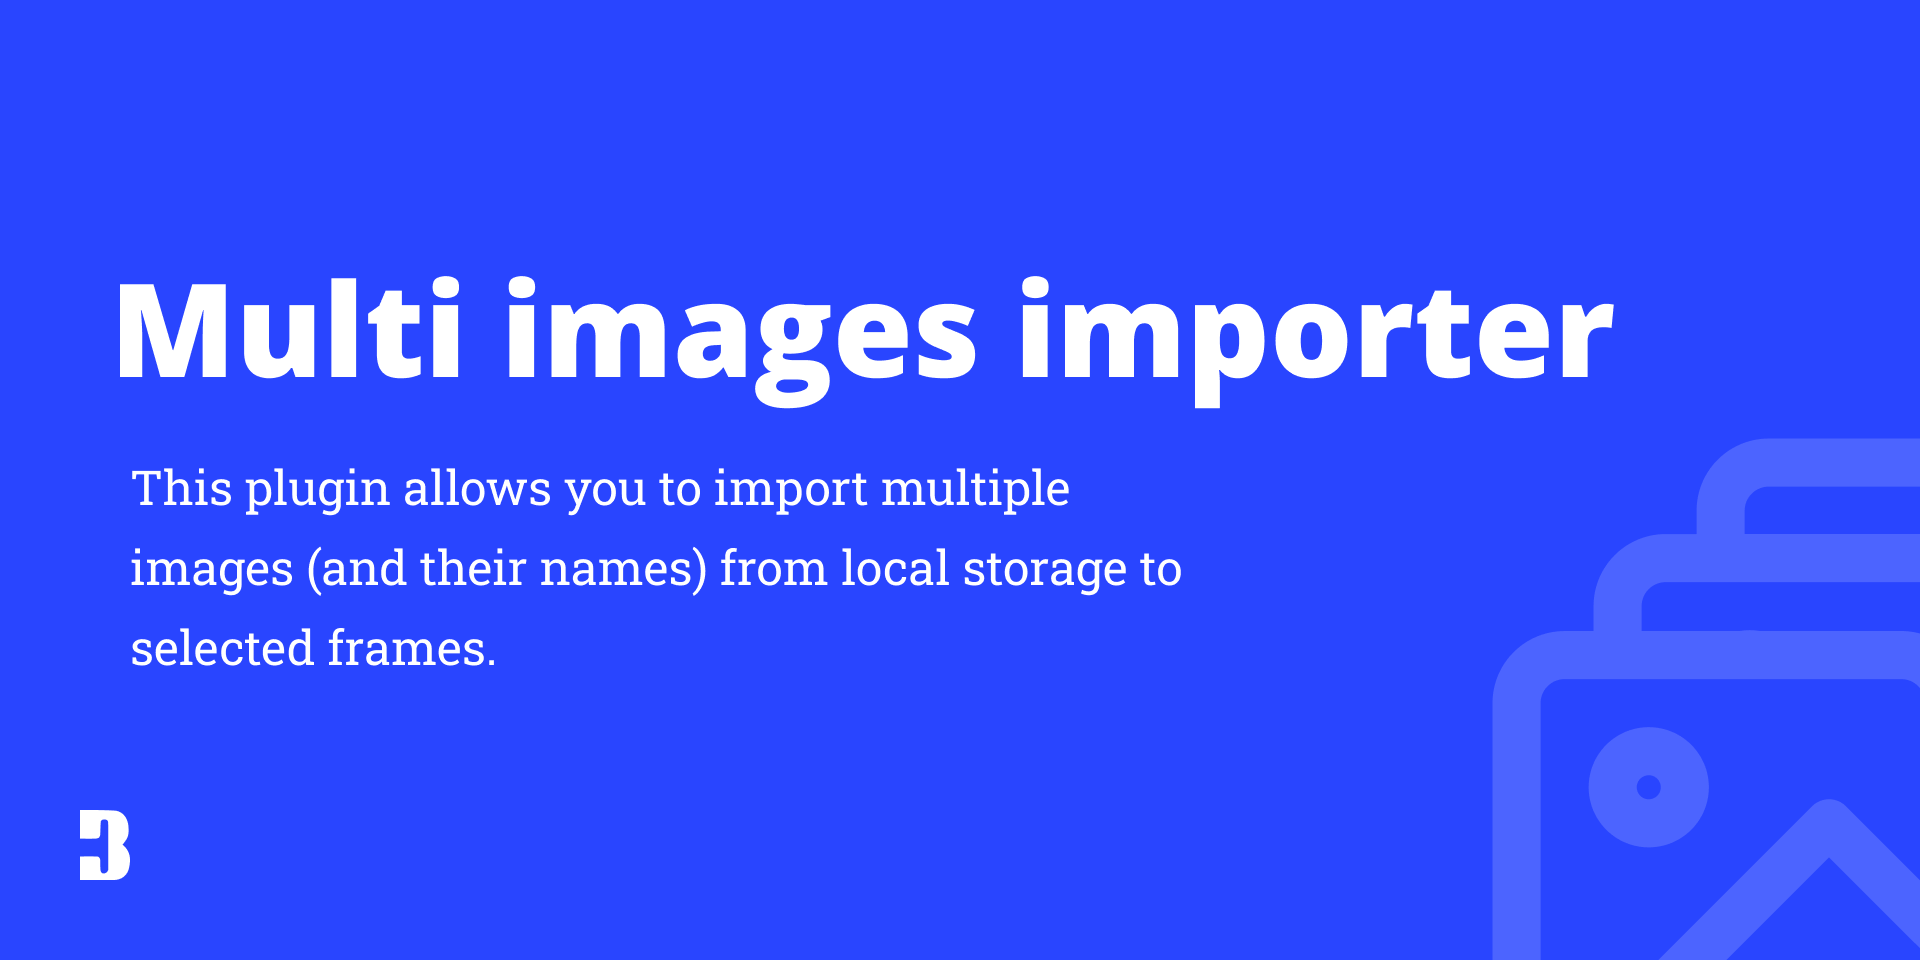 установить плагин для Фигмы Multi images importer